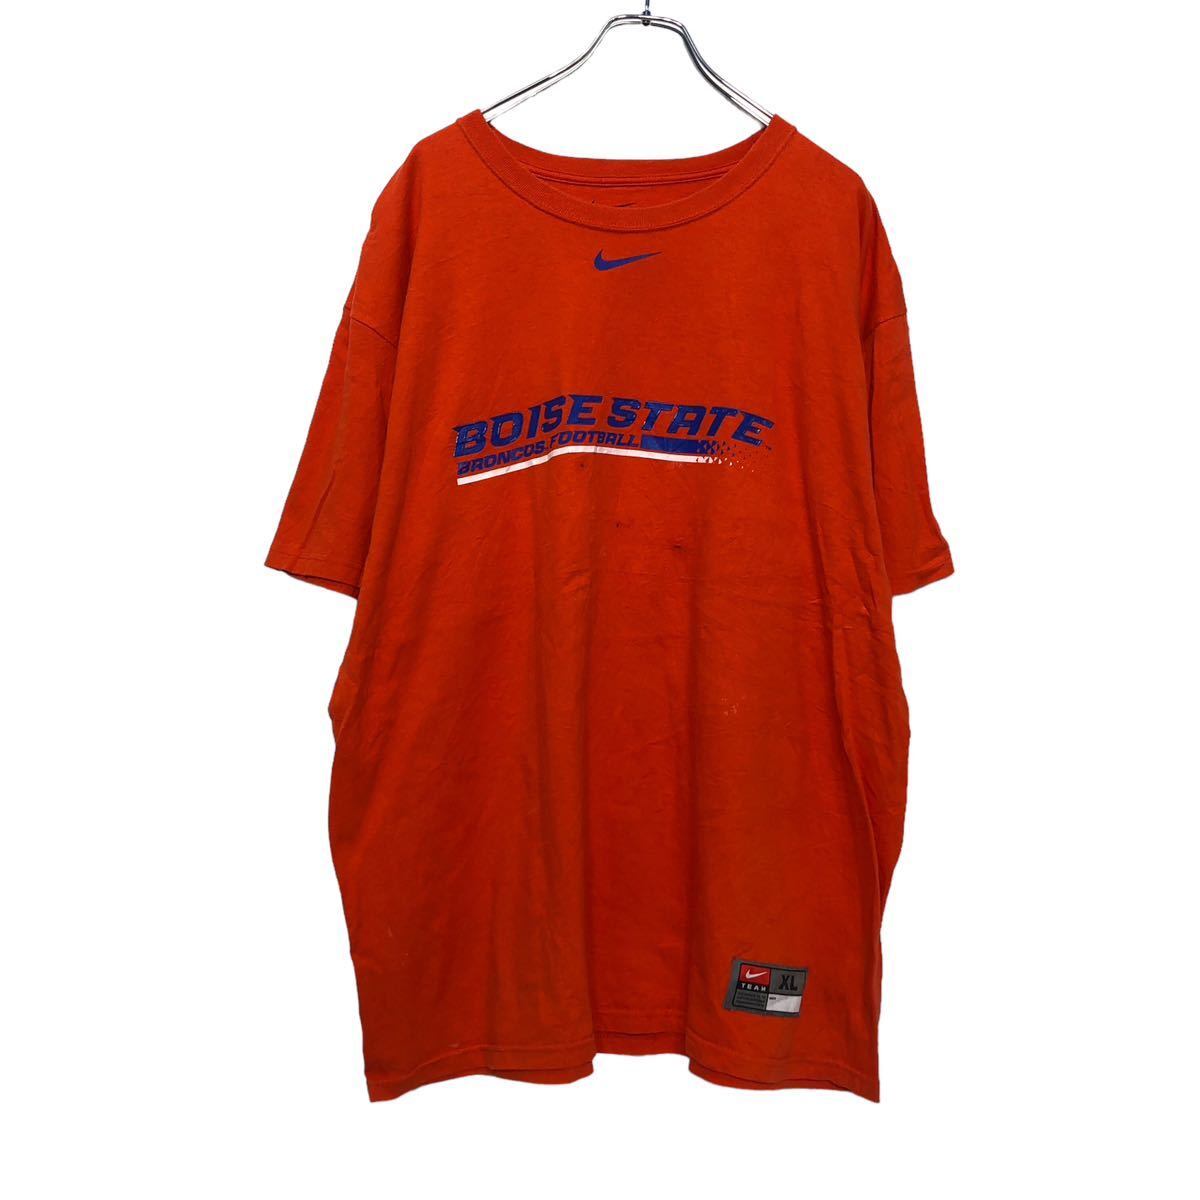 NIKE 半袖 プリント Tシャツ XL オレンジ ナイキ スポーツ